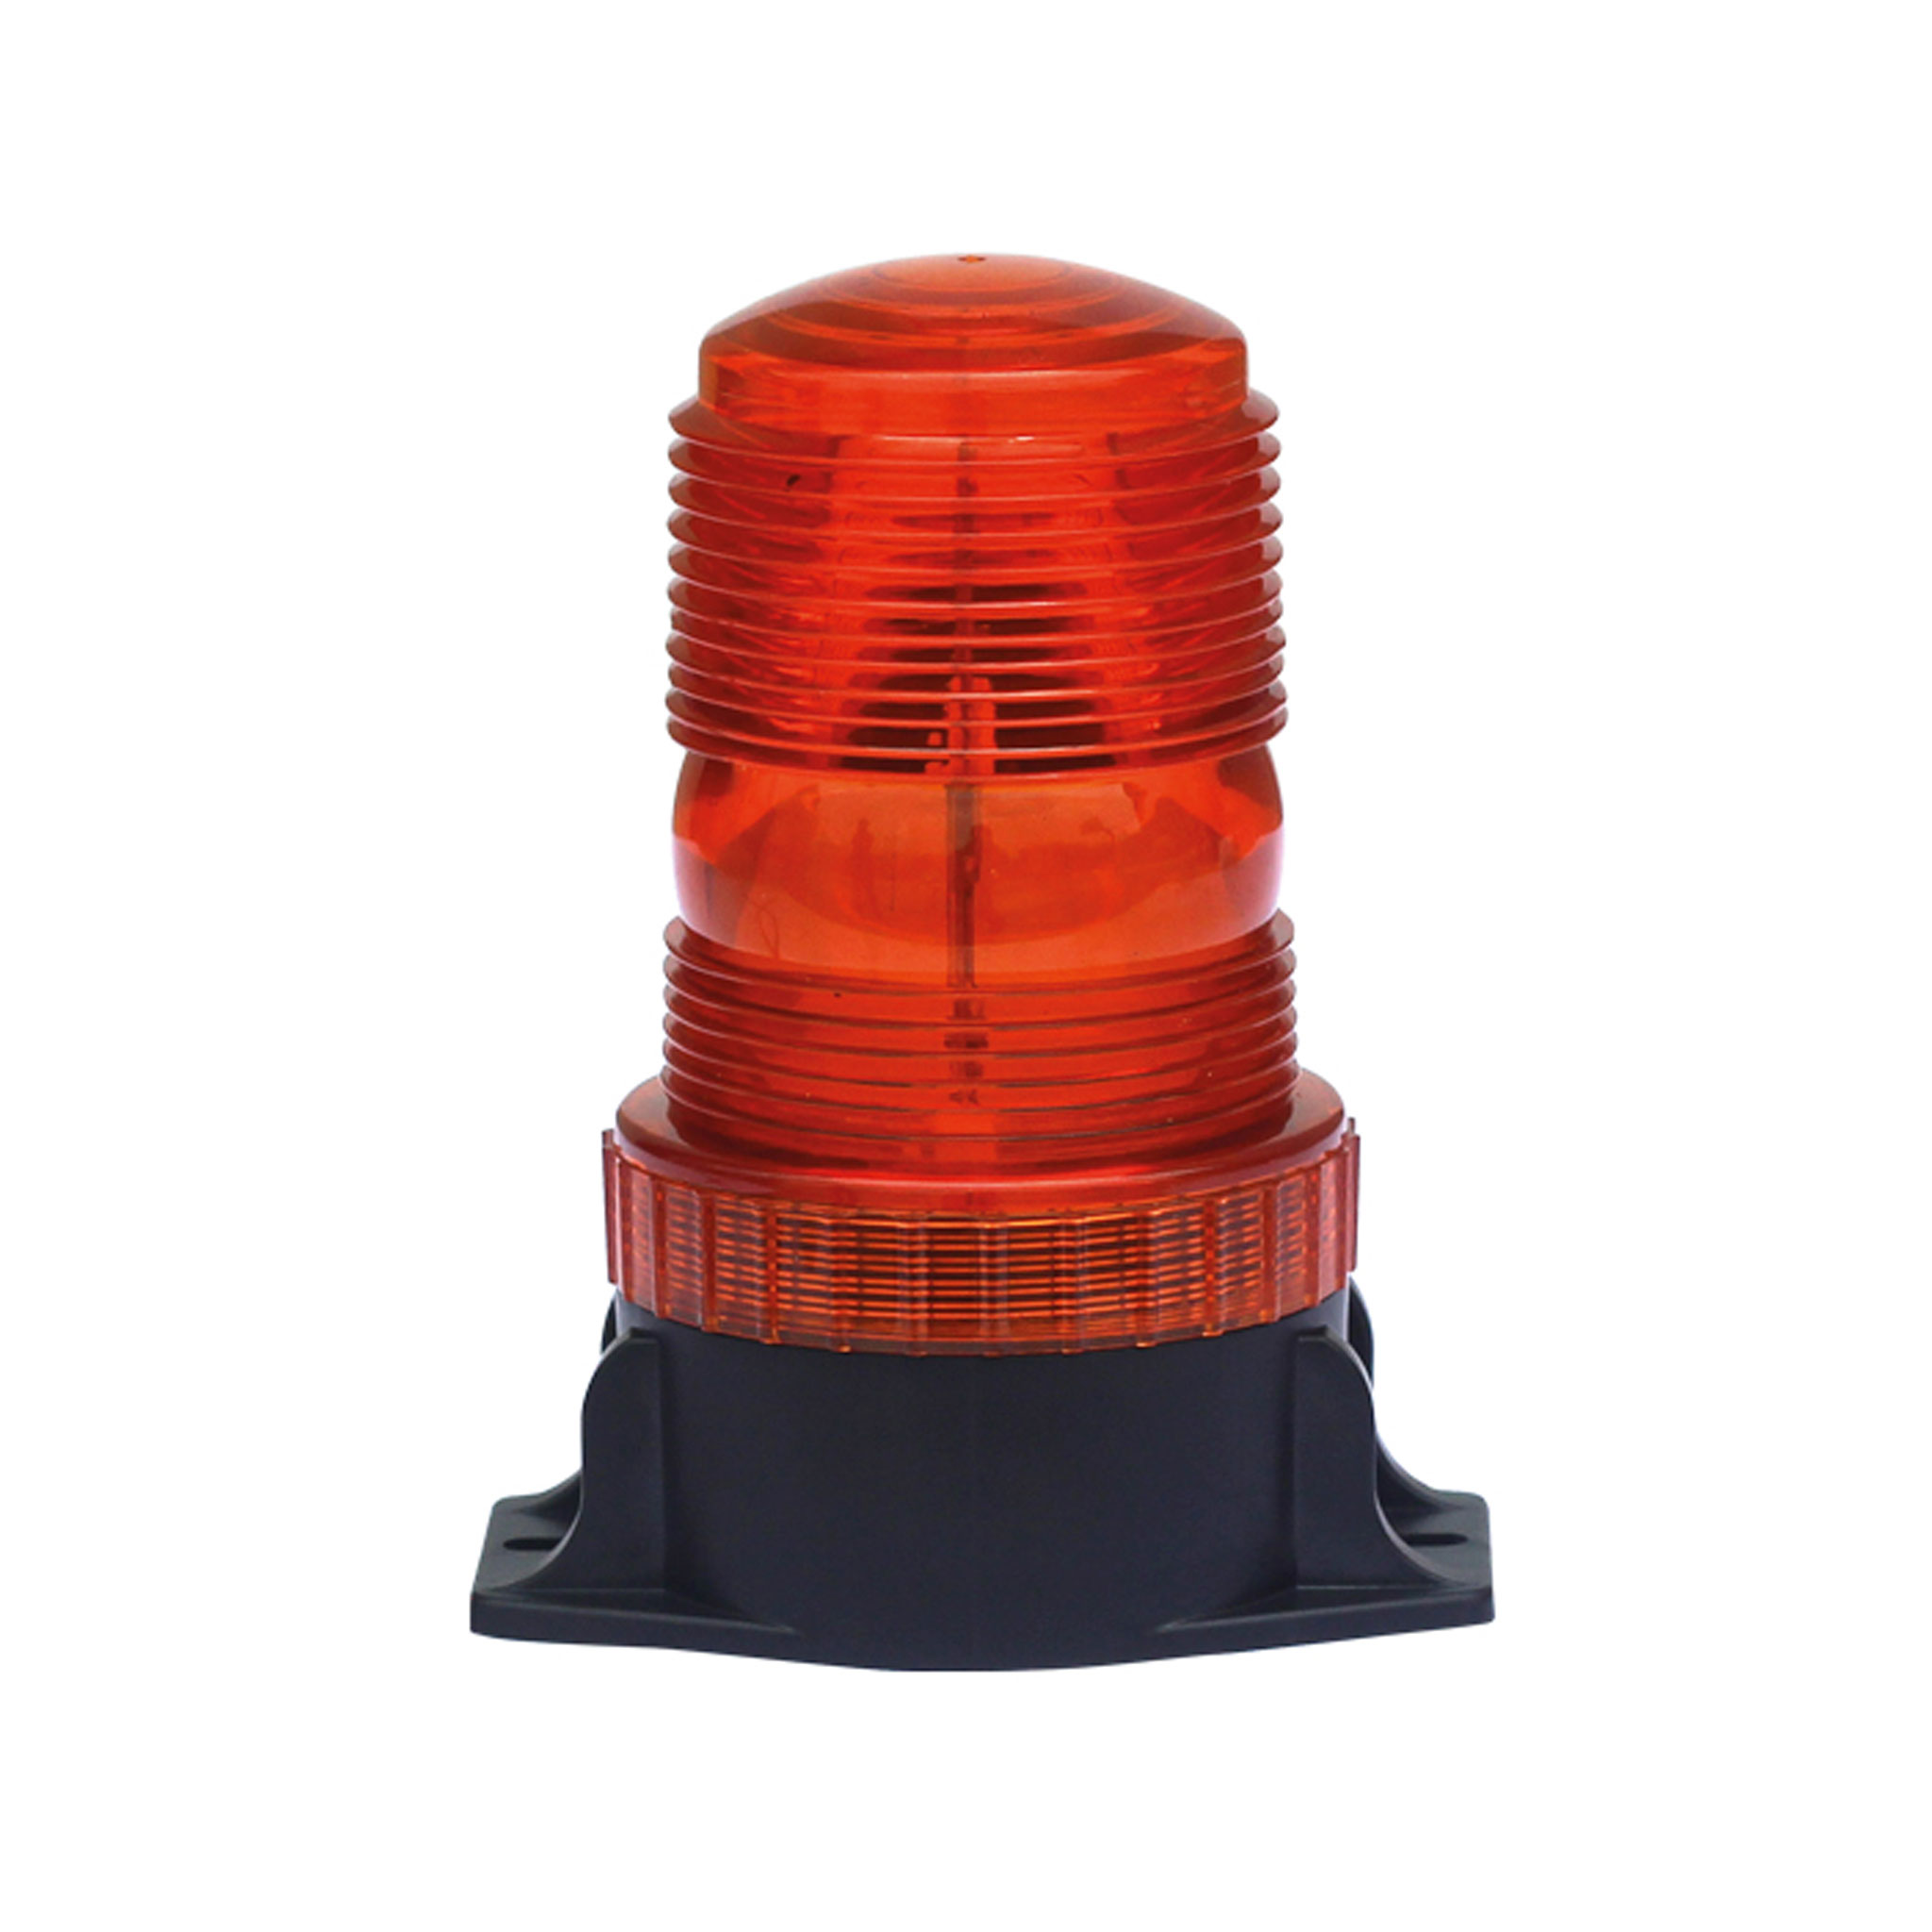 Varningsljus Swe Orange / Röd 10-110V